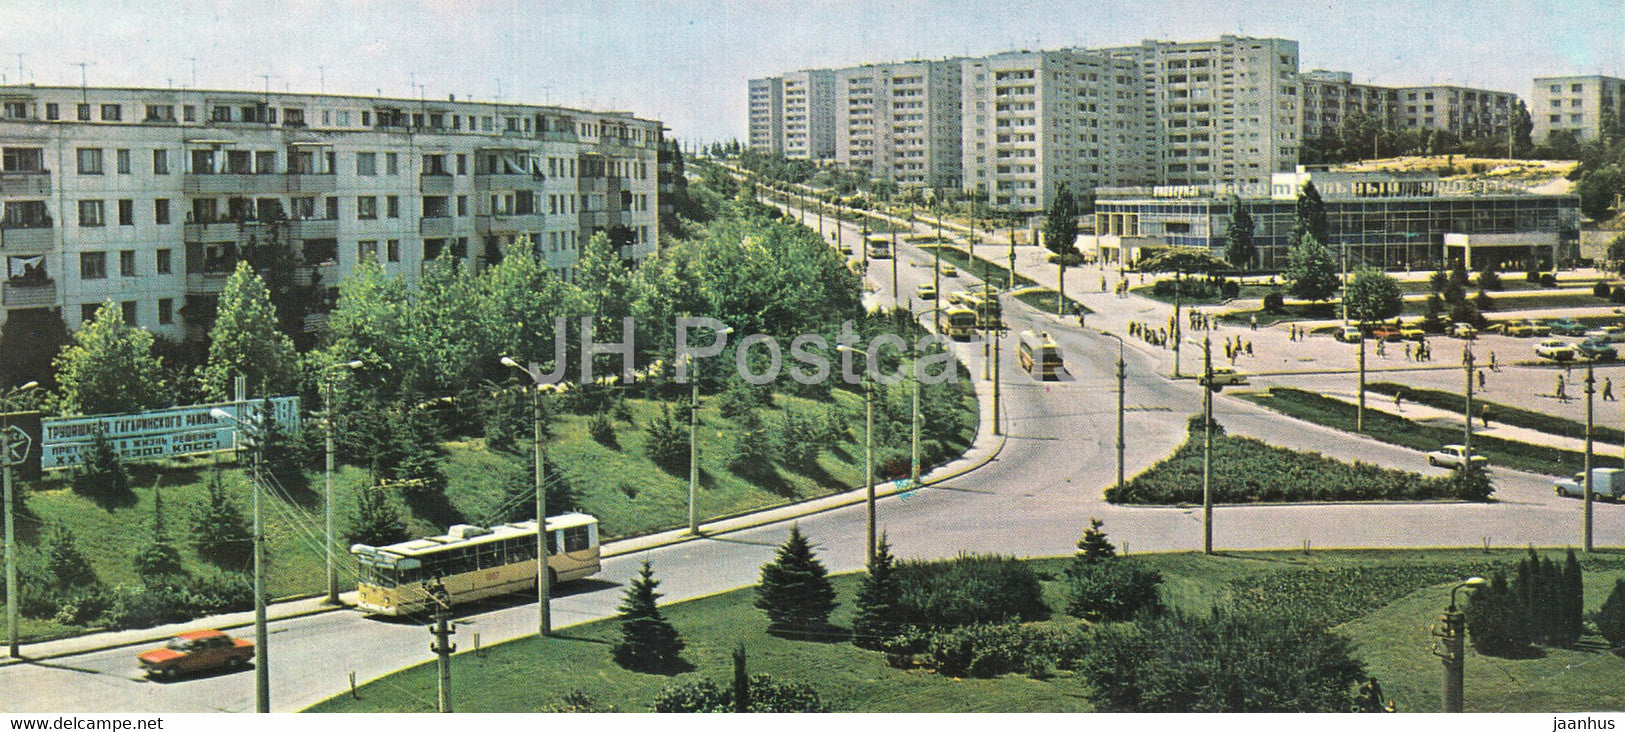 Sevastopol - 50th October Revolution Anniversary Square - trolleybus - Crimea - 1980 - Ukraine USSR - unused - JH Postcards